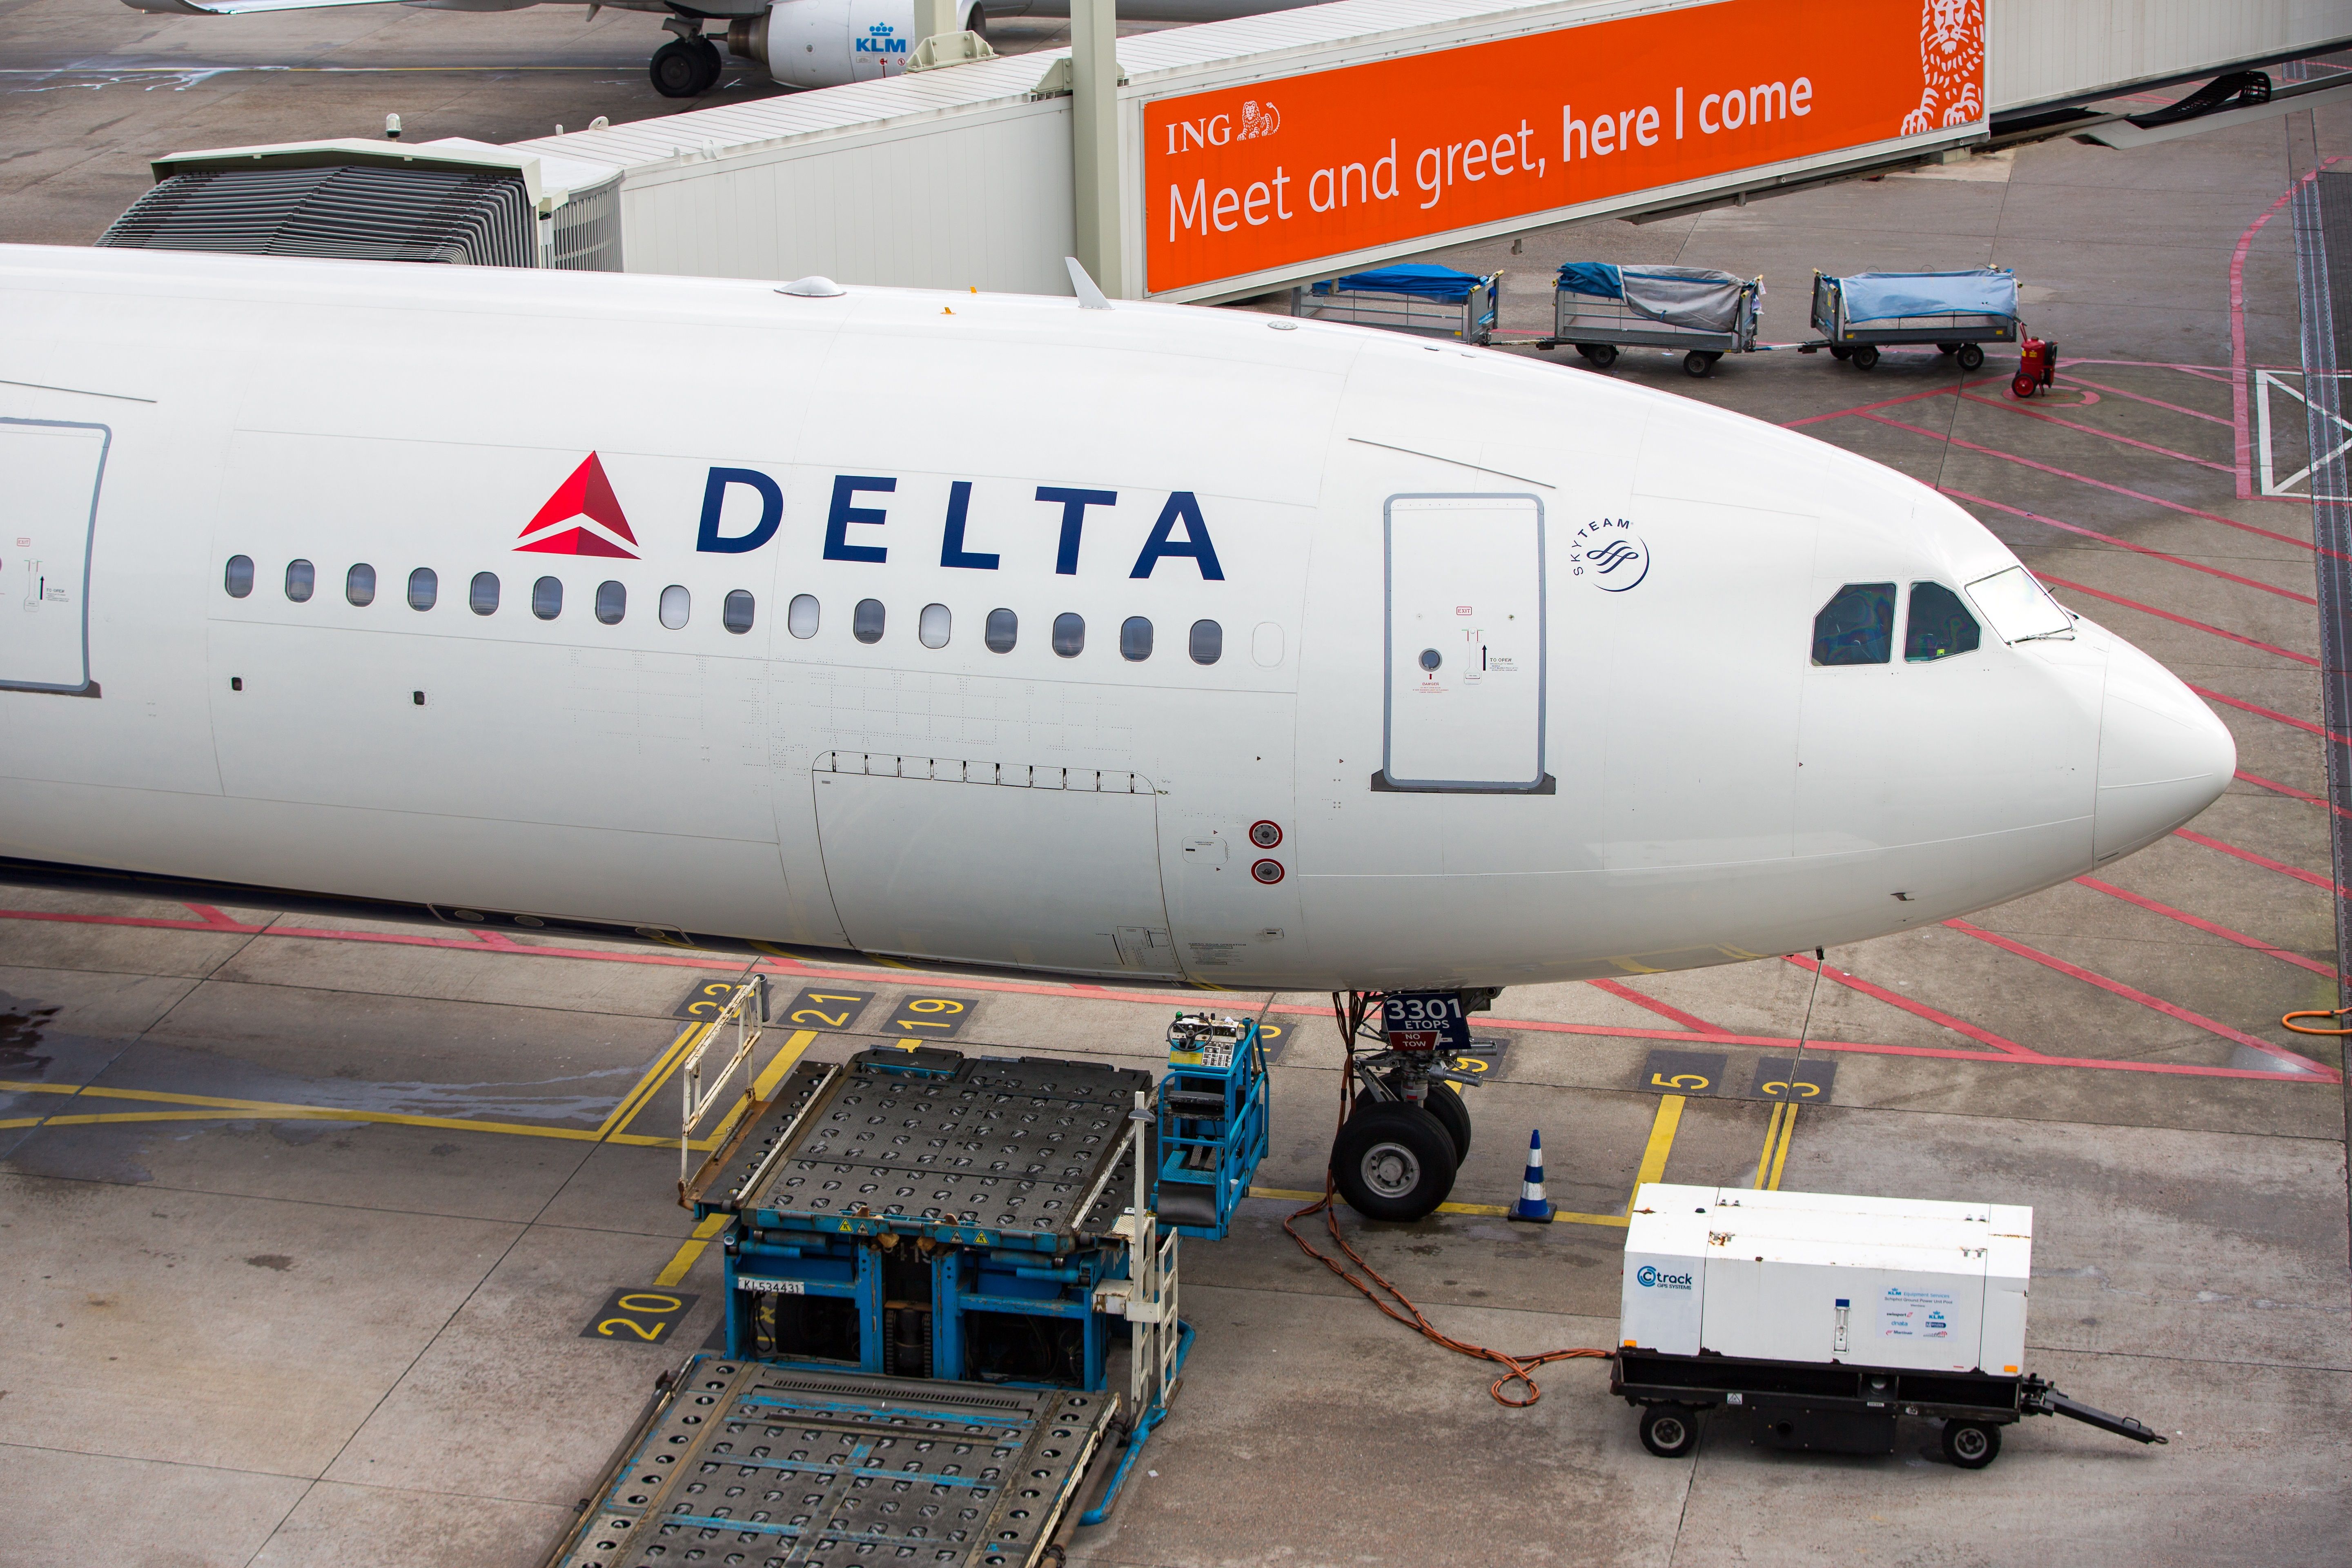 Delta aircraft parked on stand at Atlanta